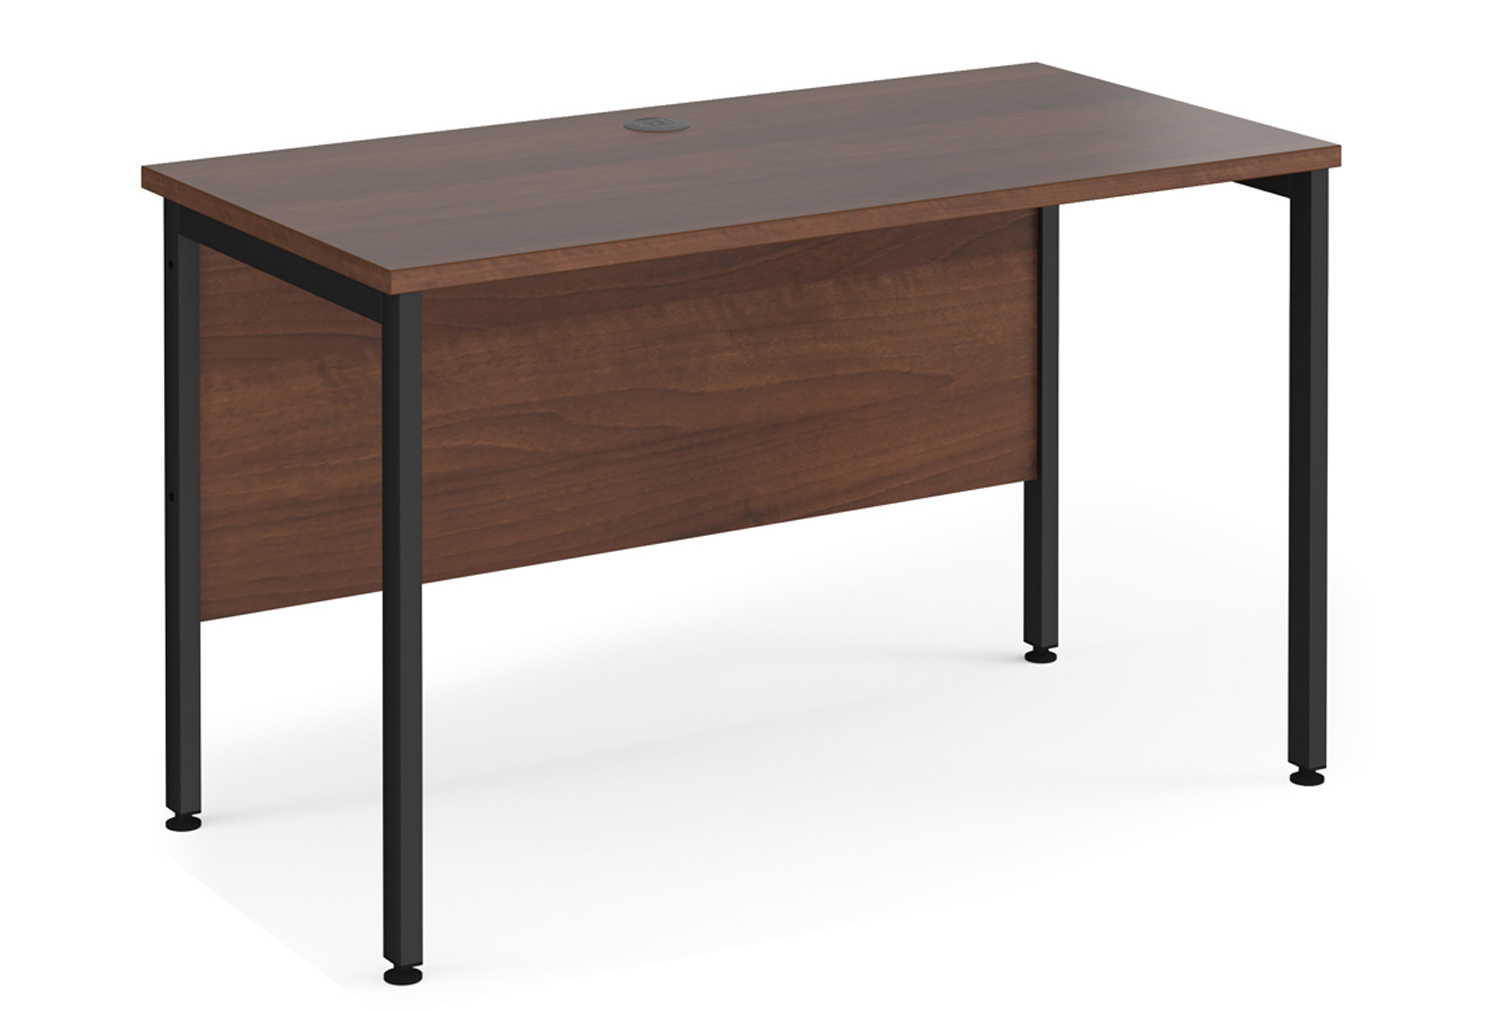 Value Line Deluxe H-Leg Narrow Rectangular Office Desk (Black Legs), 120w60dx73h (cm), Walnut, Fully Installed